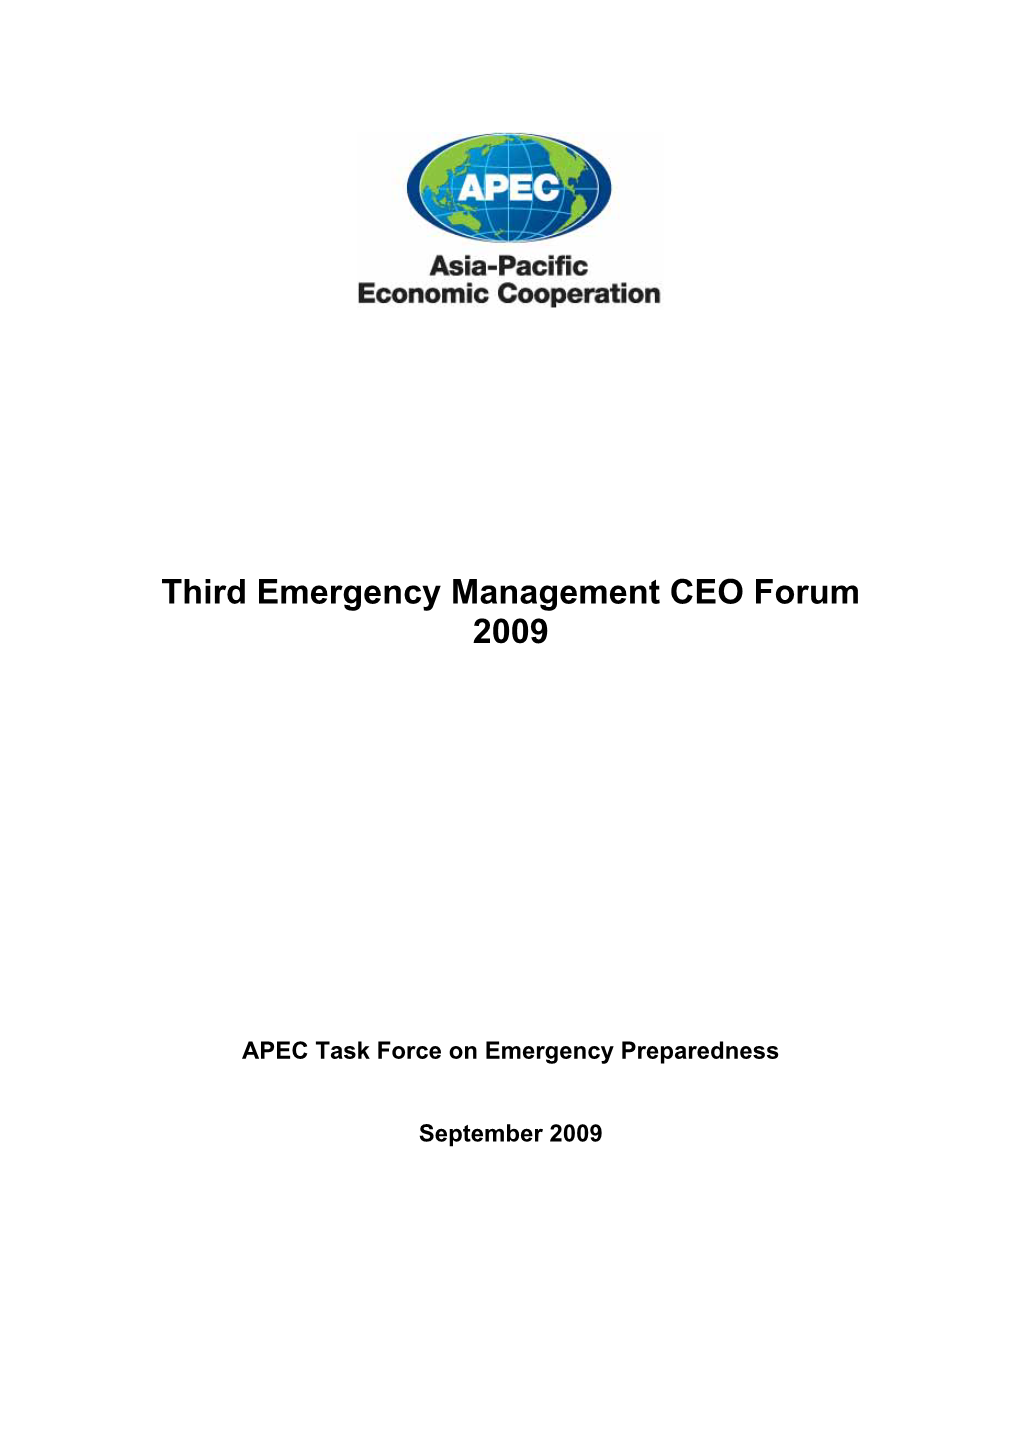 Third Emergency Management CEO Forum 2009